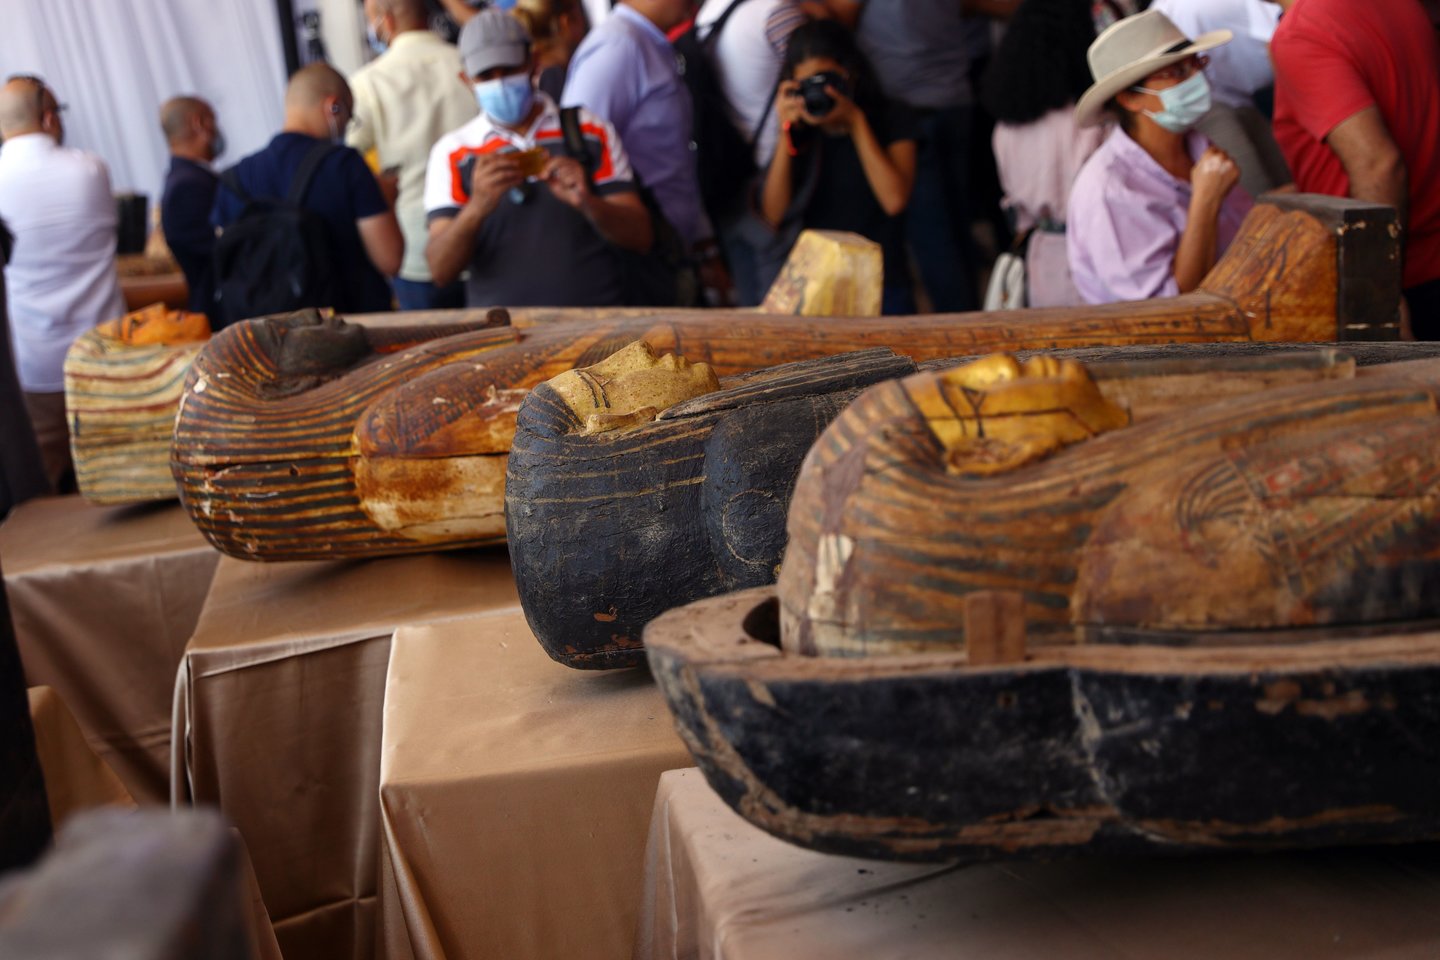  Egipto archeologai šeštadienį pristatė per pastarąsias savaites rastus 59 gerai išsilaikiusius ir sandariai uždarytus medinius karstus, kuriems daugiau nei 2500 metų.<br>Imago / Zuma press / Sipa Press / Scanpix nuotr.